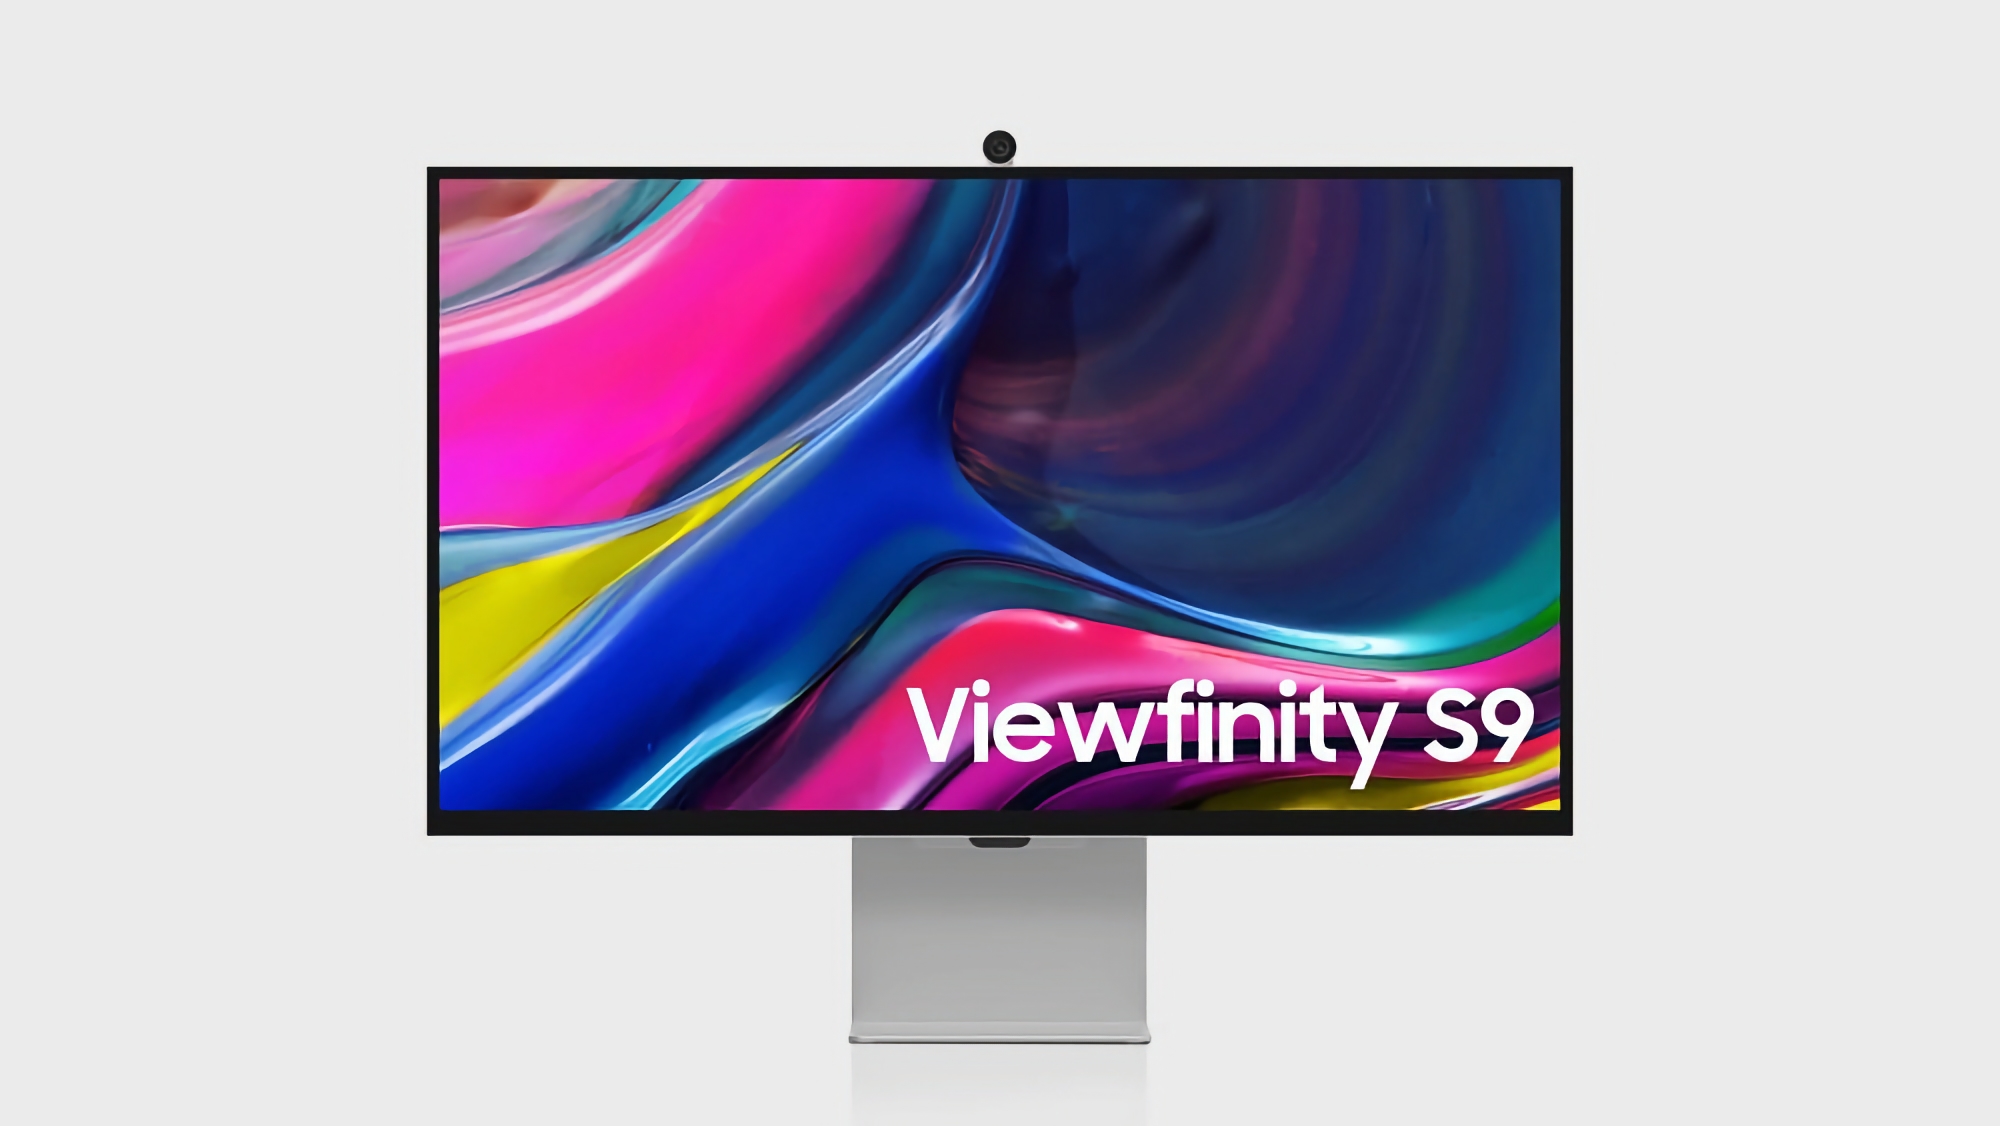 Rival de Apple Studio Display: Samsung lanza el monitor ViewFinity S9 5K con webcam integrada y sistema operativo Tizen TV OS